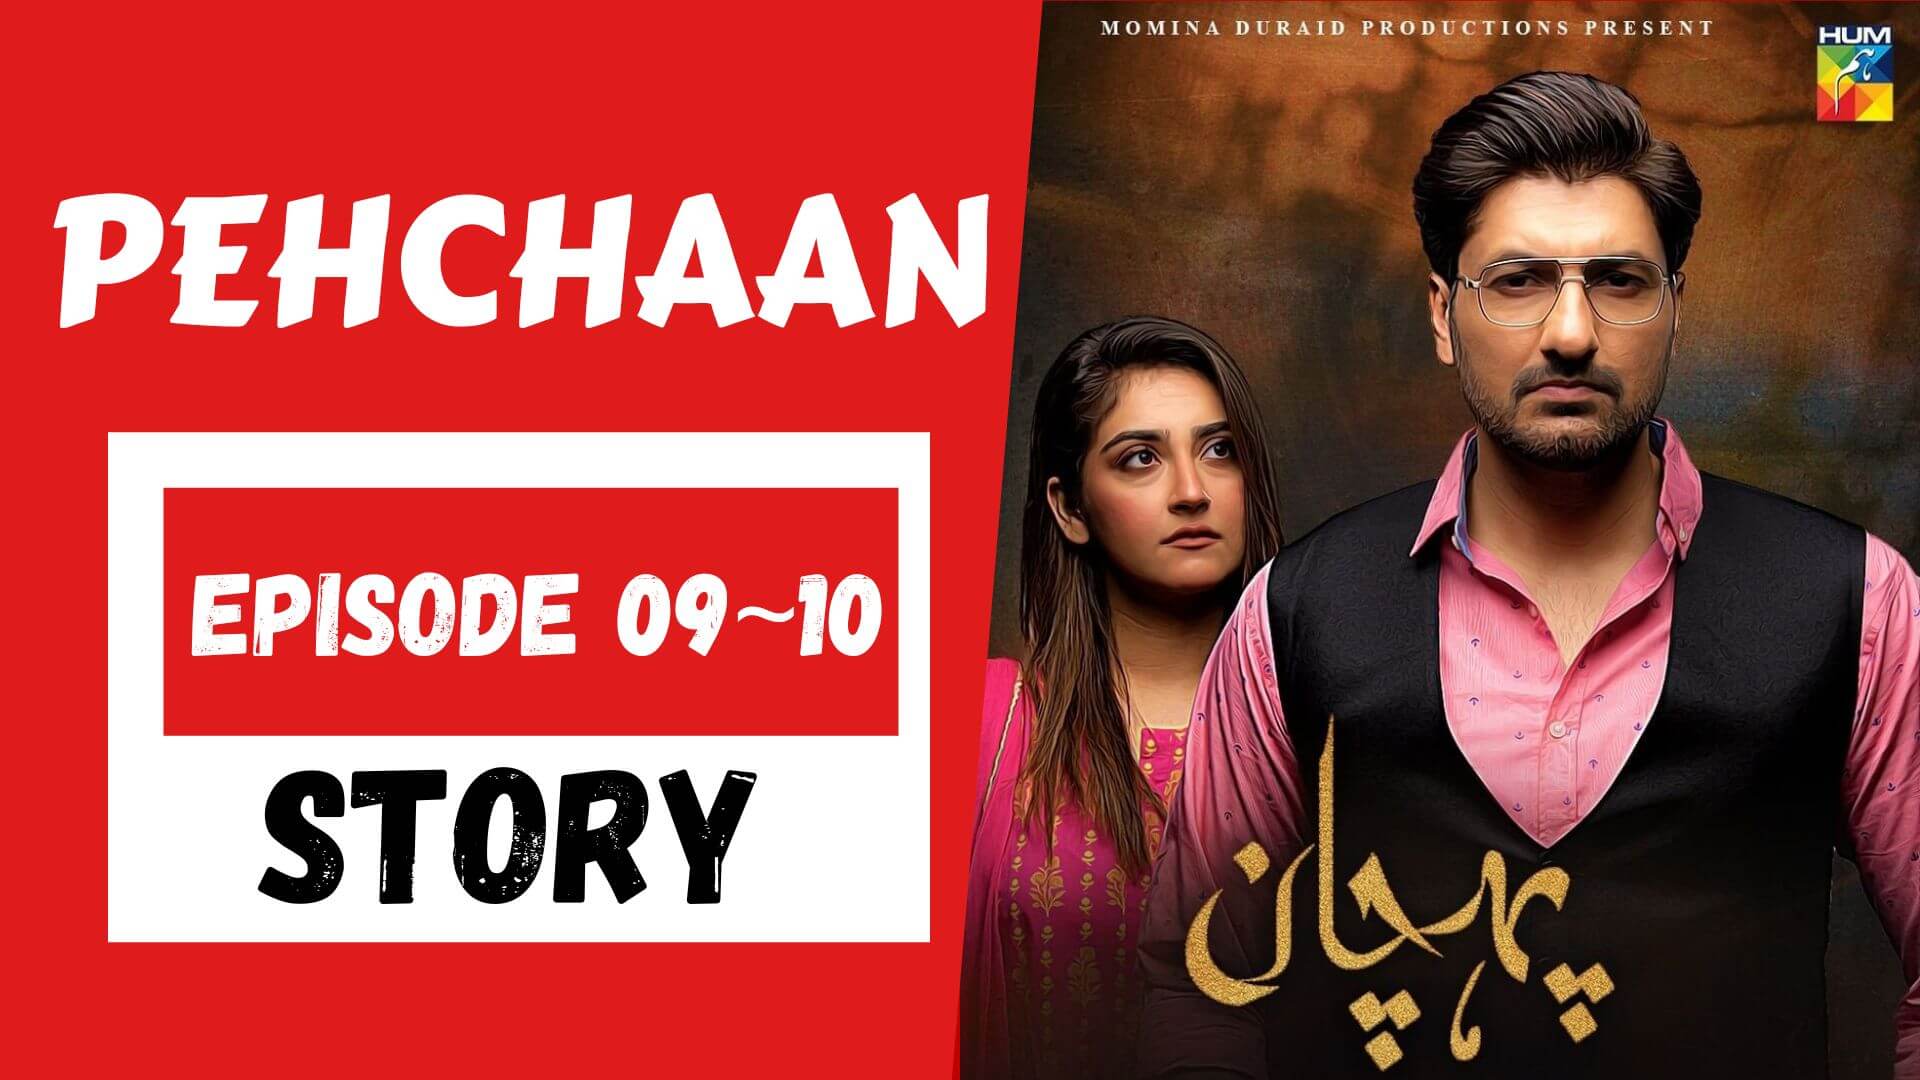 Pehchaan Episode 09_10 Story